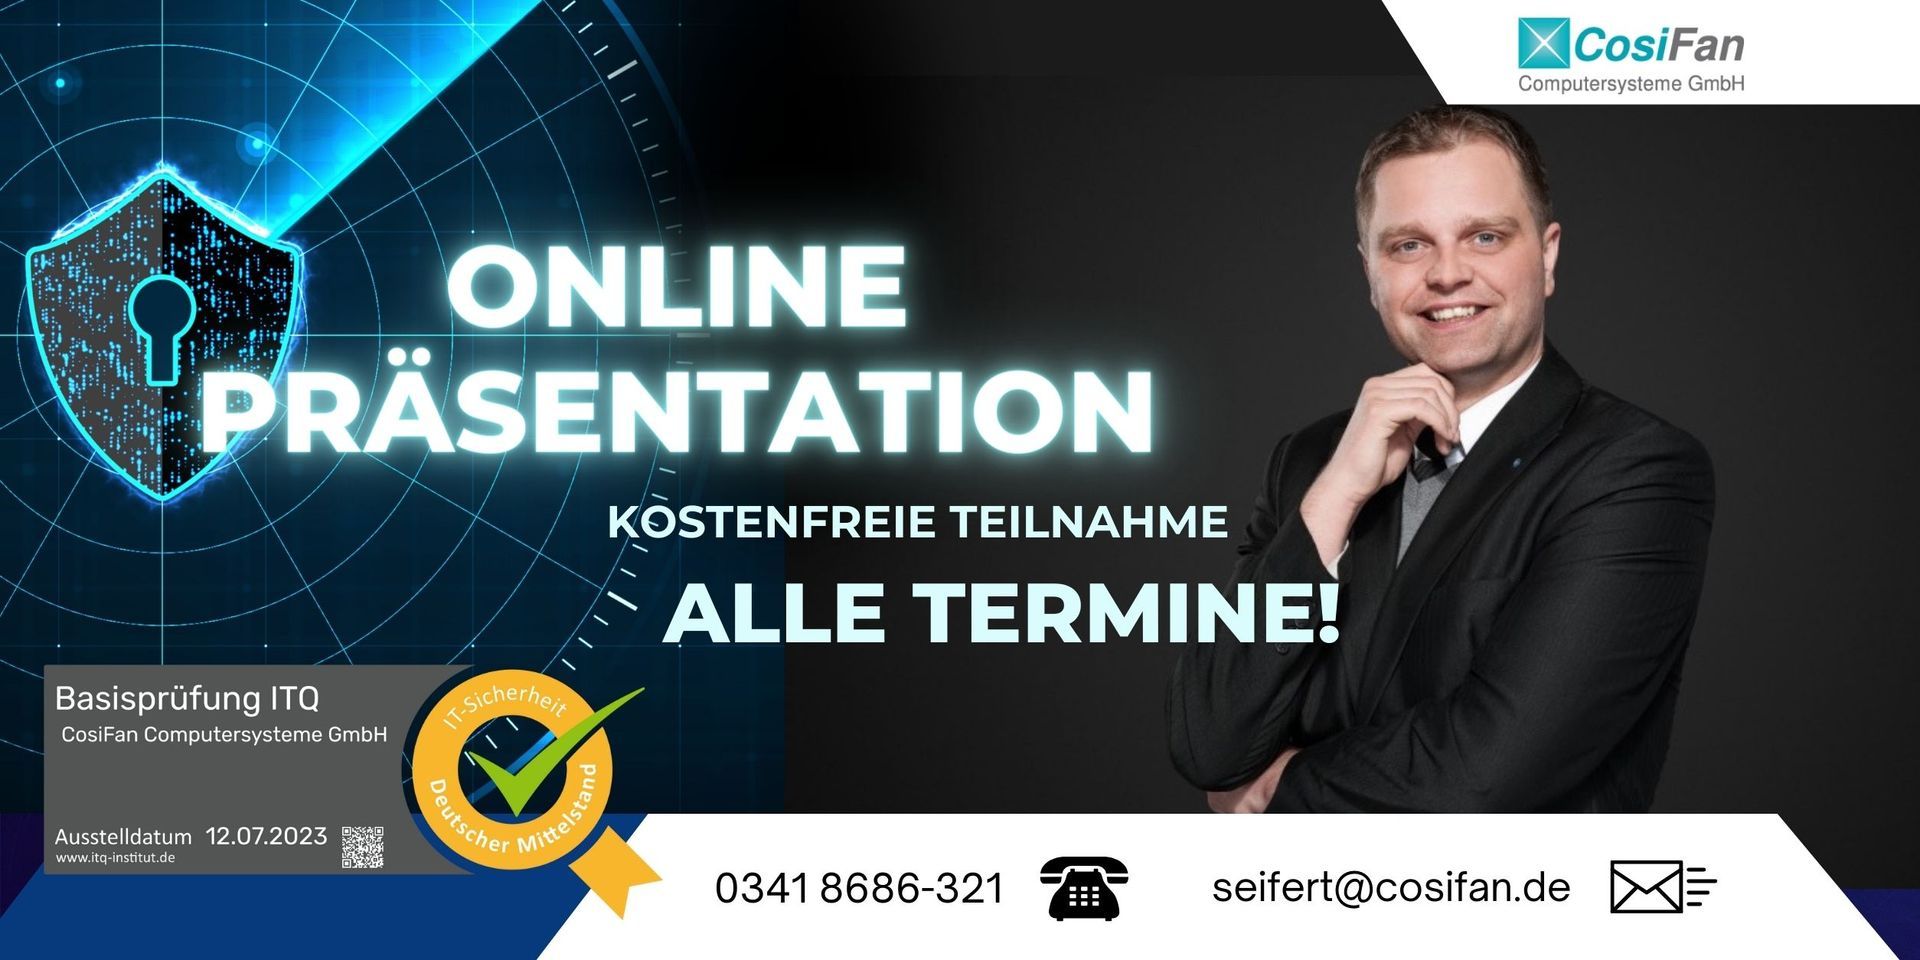 Online Präsentation - Alle Termine!